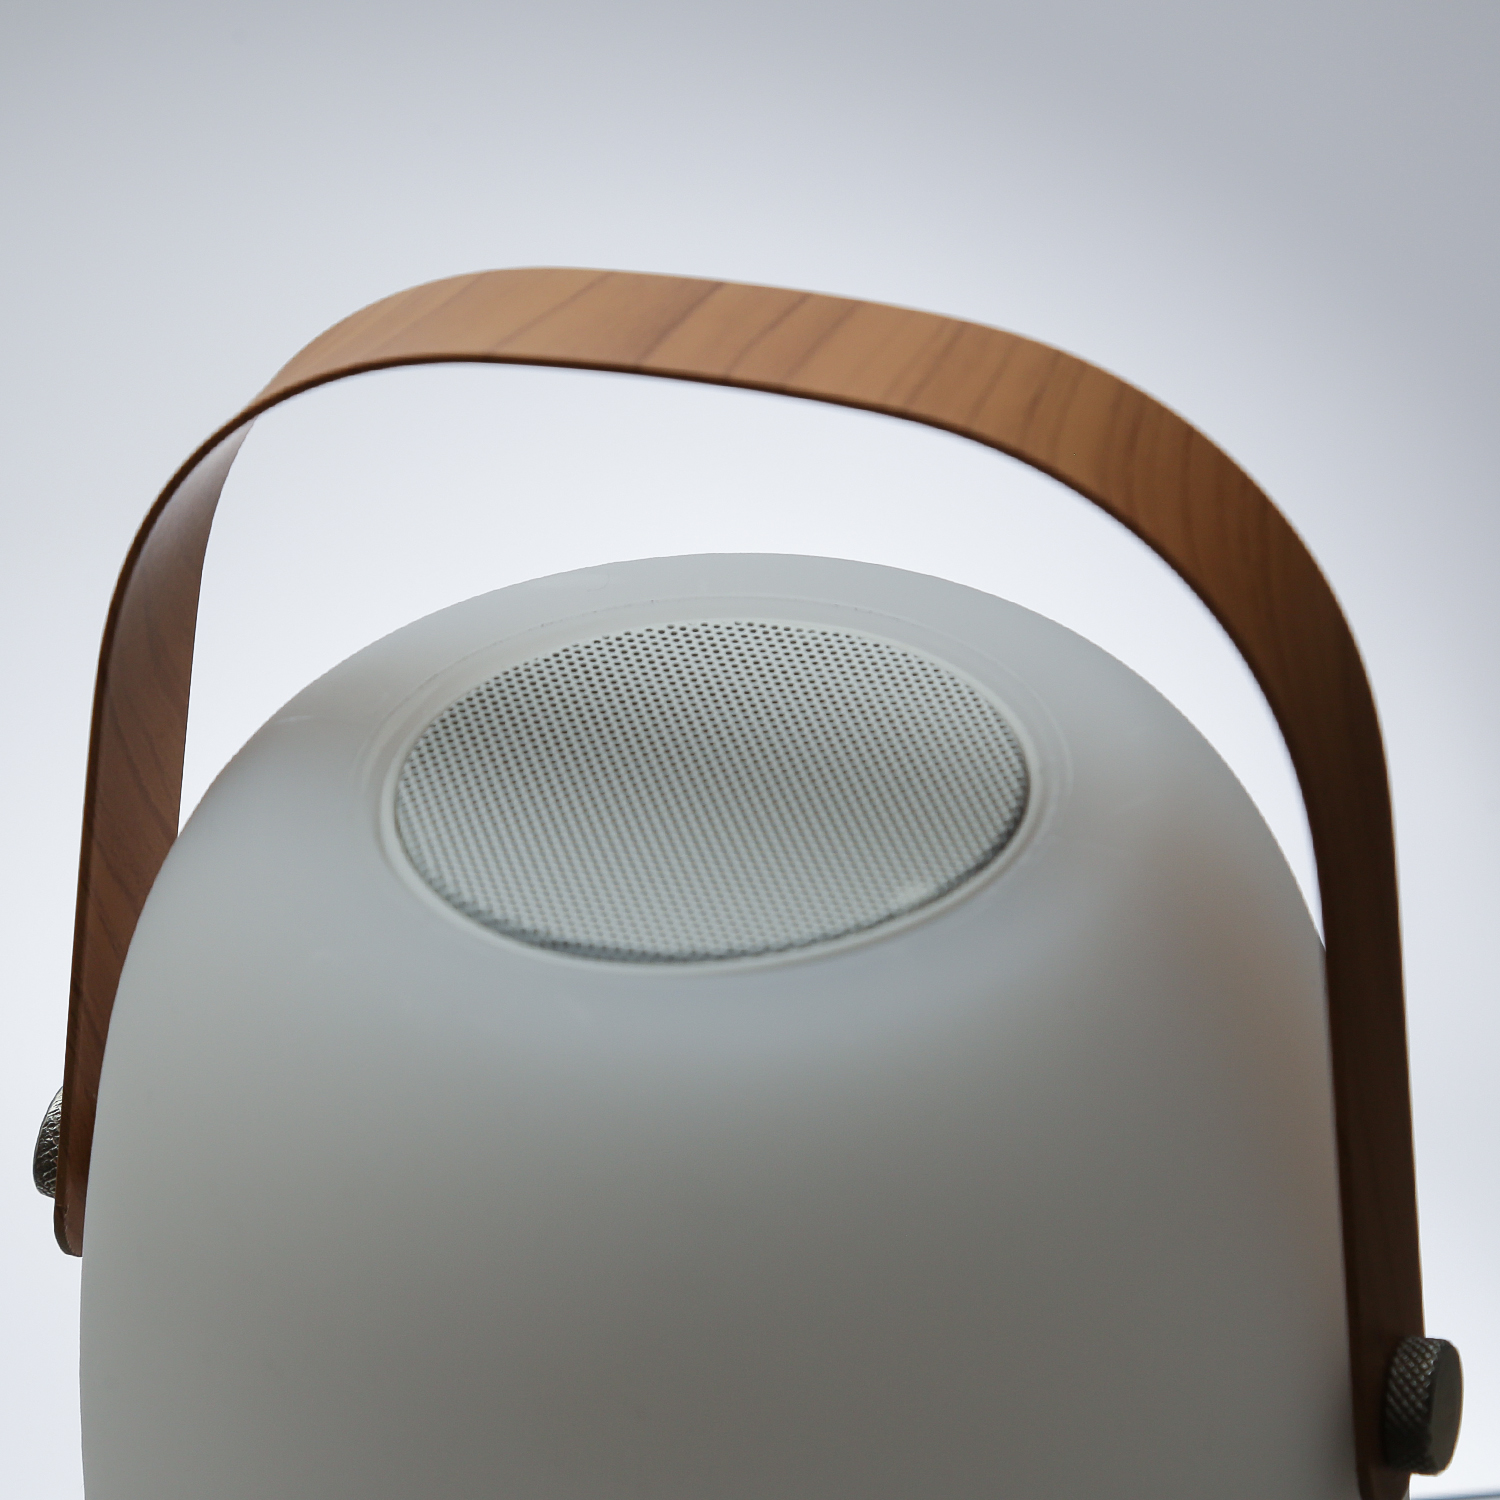 LED Tischleuchte mit Lautsprecher - Bluetooth - 6 warmweiße LED - H: 21cm - für Garten, Balkon